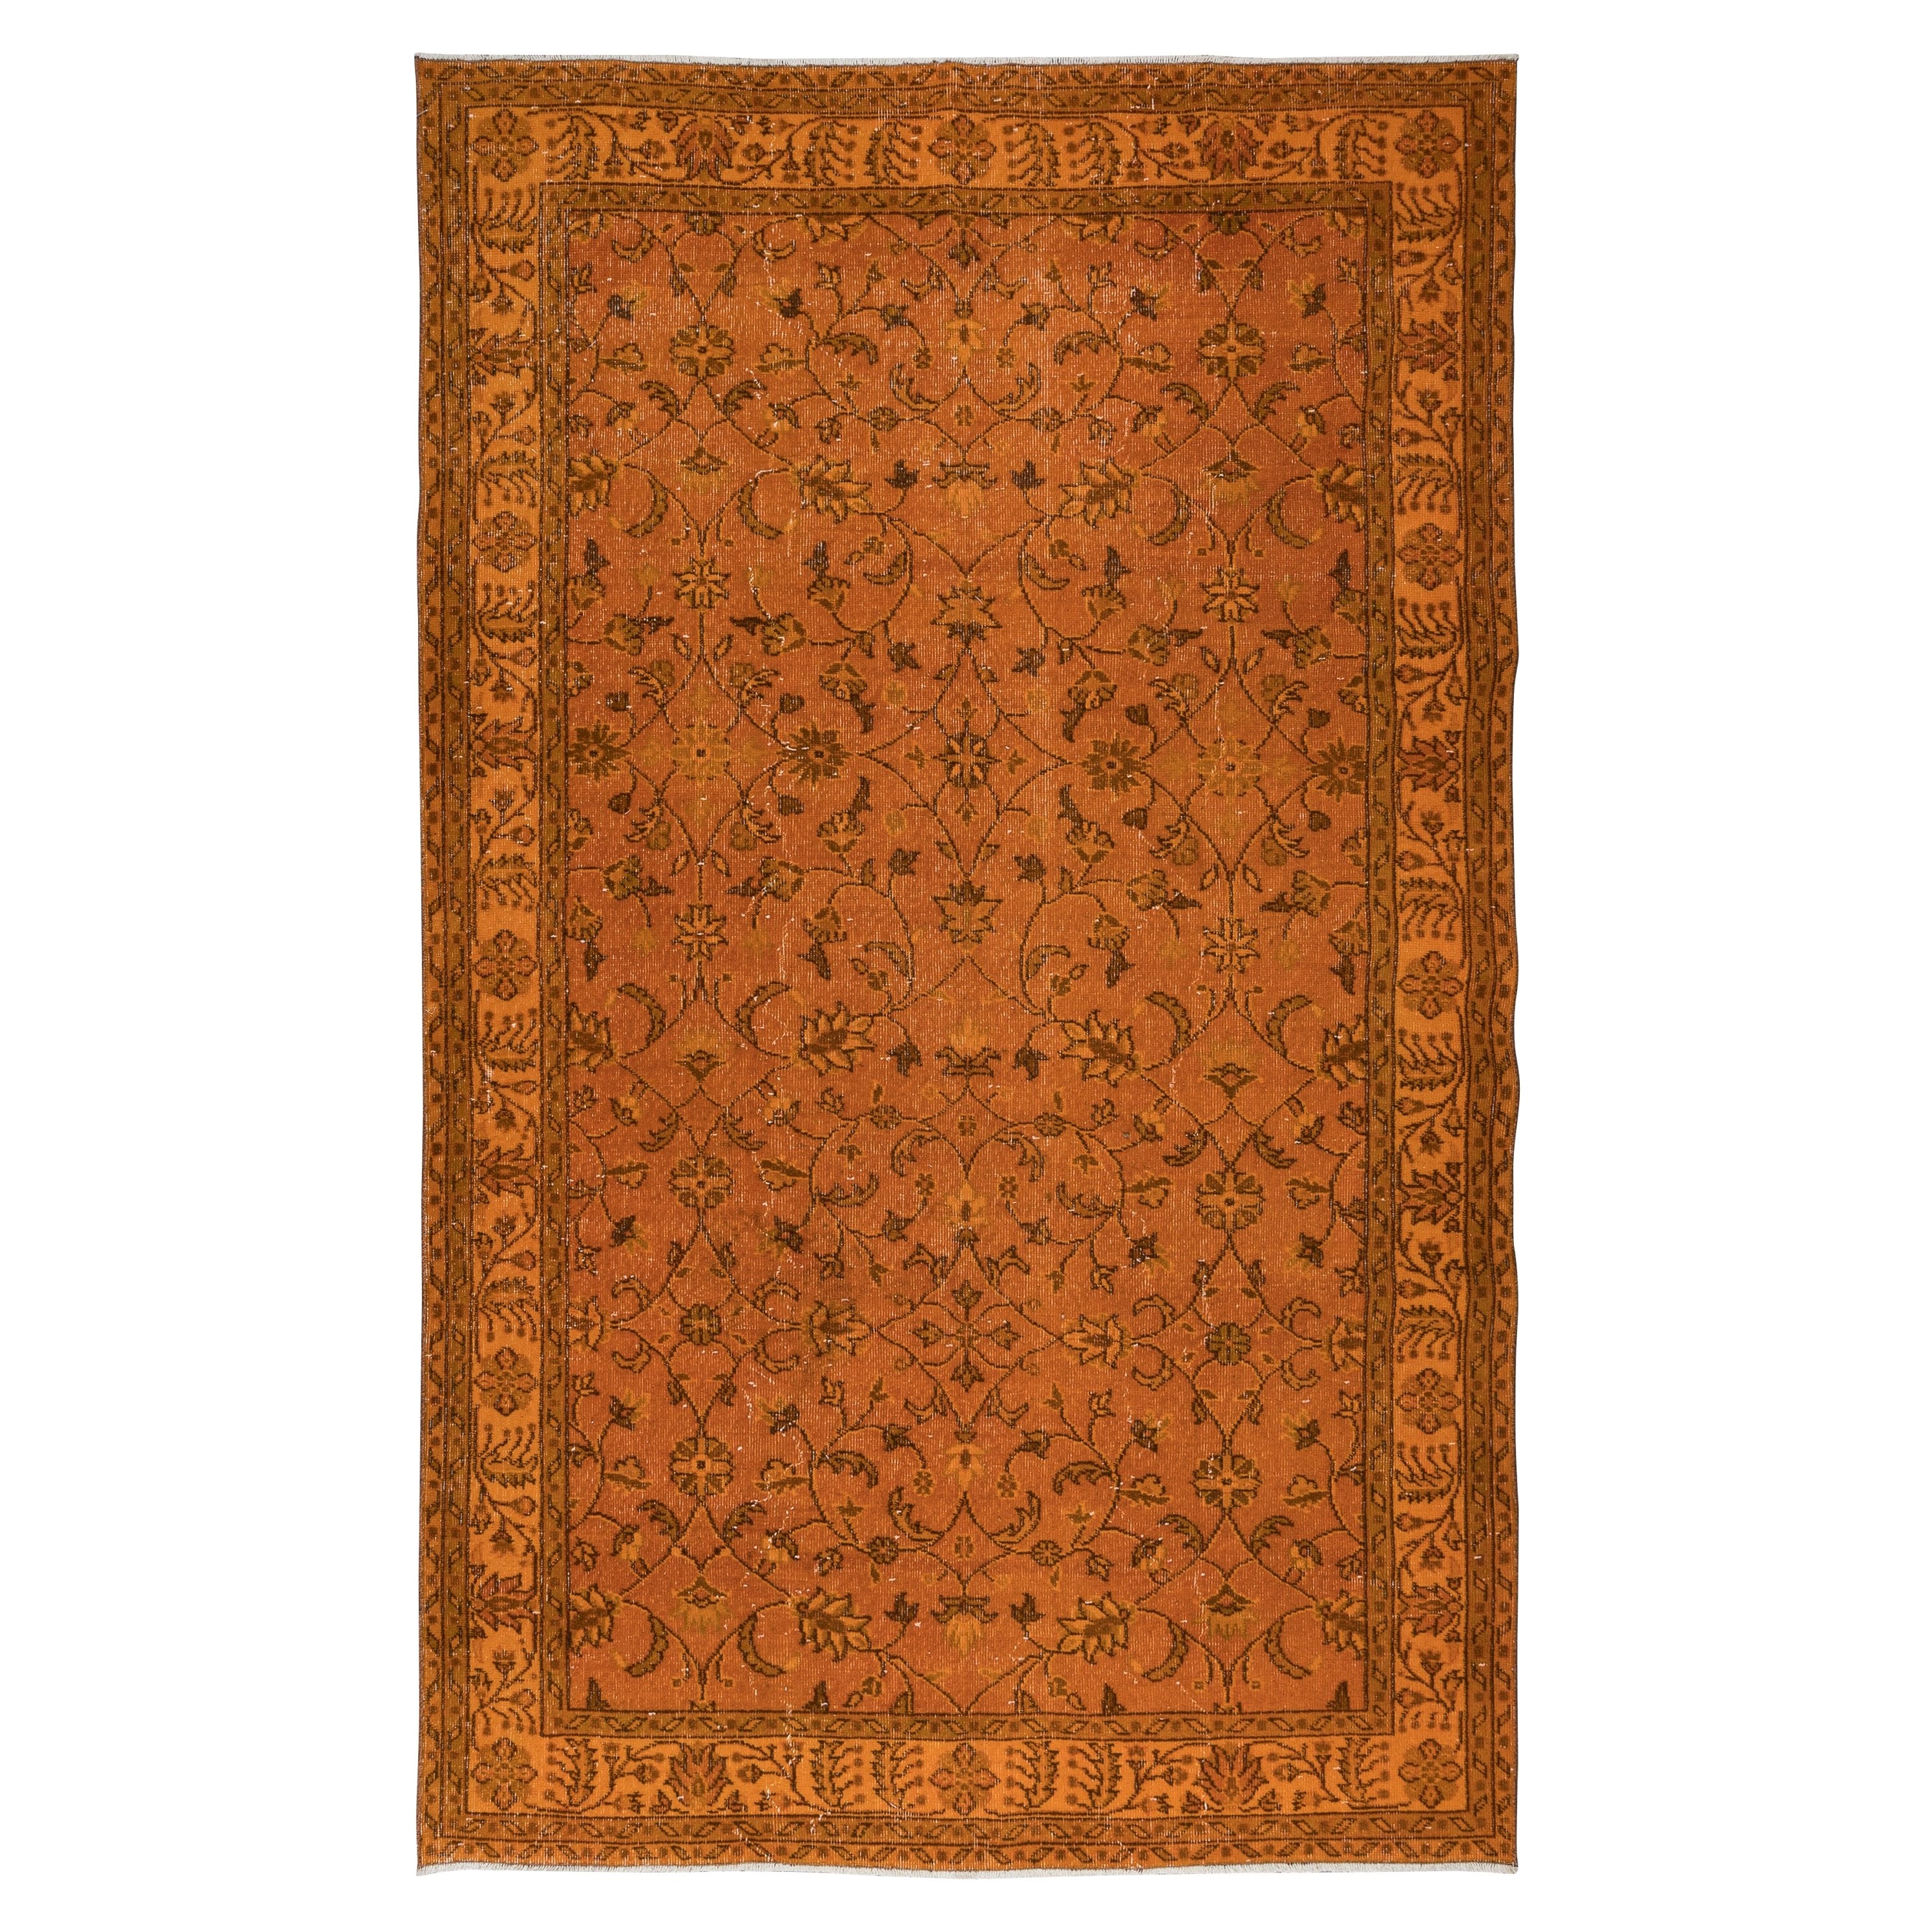 6x9.8 Ft Hand-Made Turkish Area Rug in Orange, Modern Floral Design Carpet For Sale